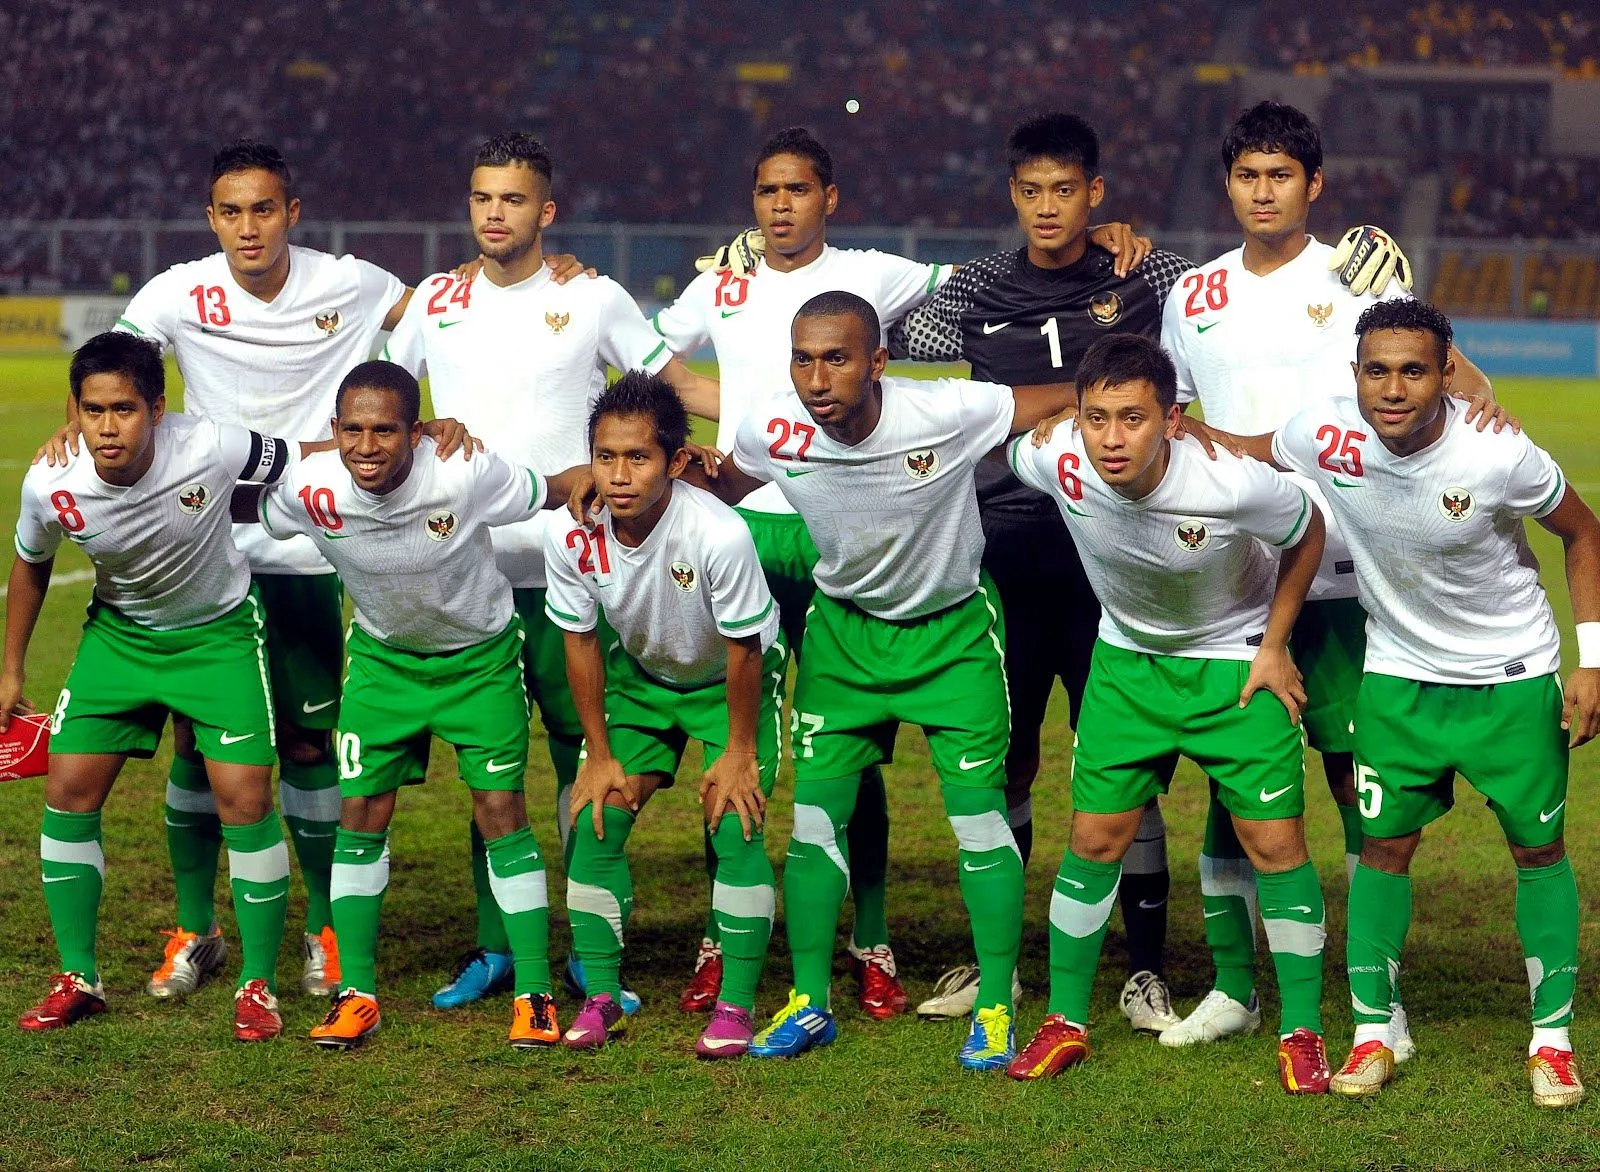 Bepe20: Kisah Kariernya dan Peran Besar dalam Sepak Bola Indonesia